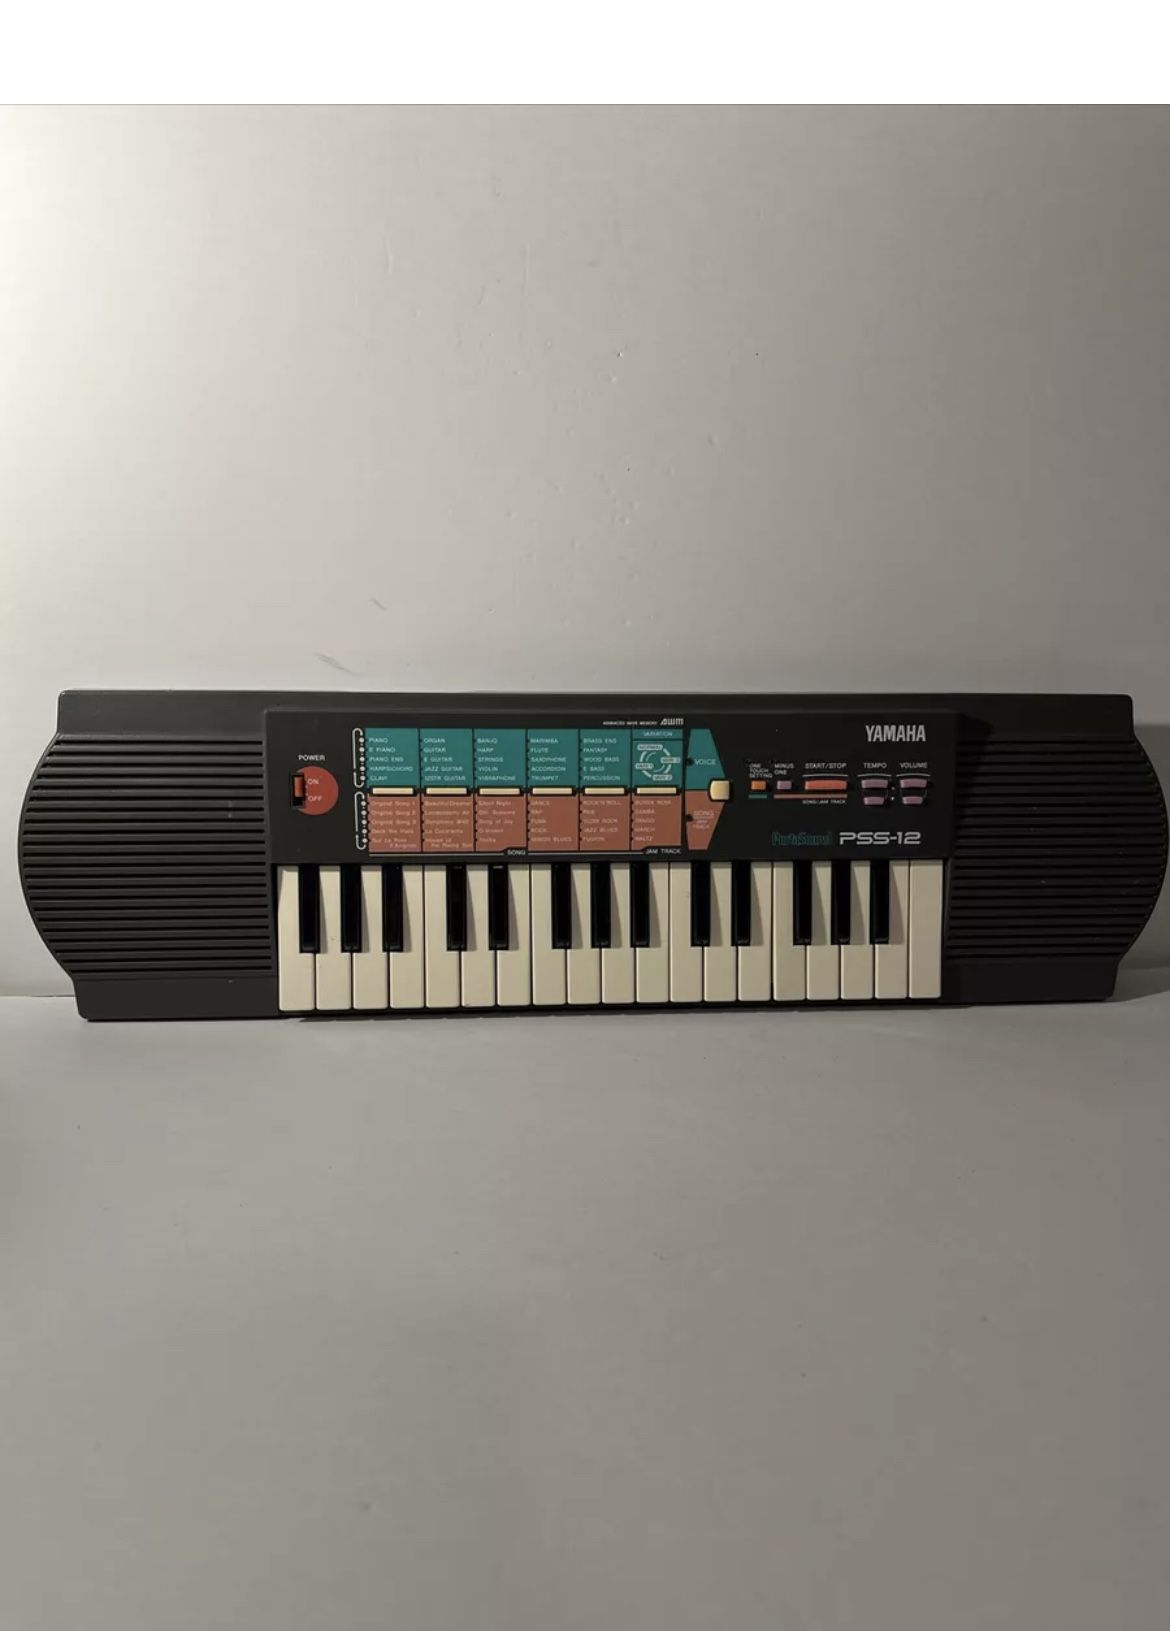 Vintage 1994 Yamaha PSS-12 Portasound 32 key Keyboard Synthesizer Tested works!!